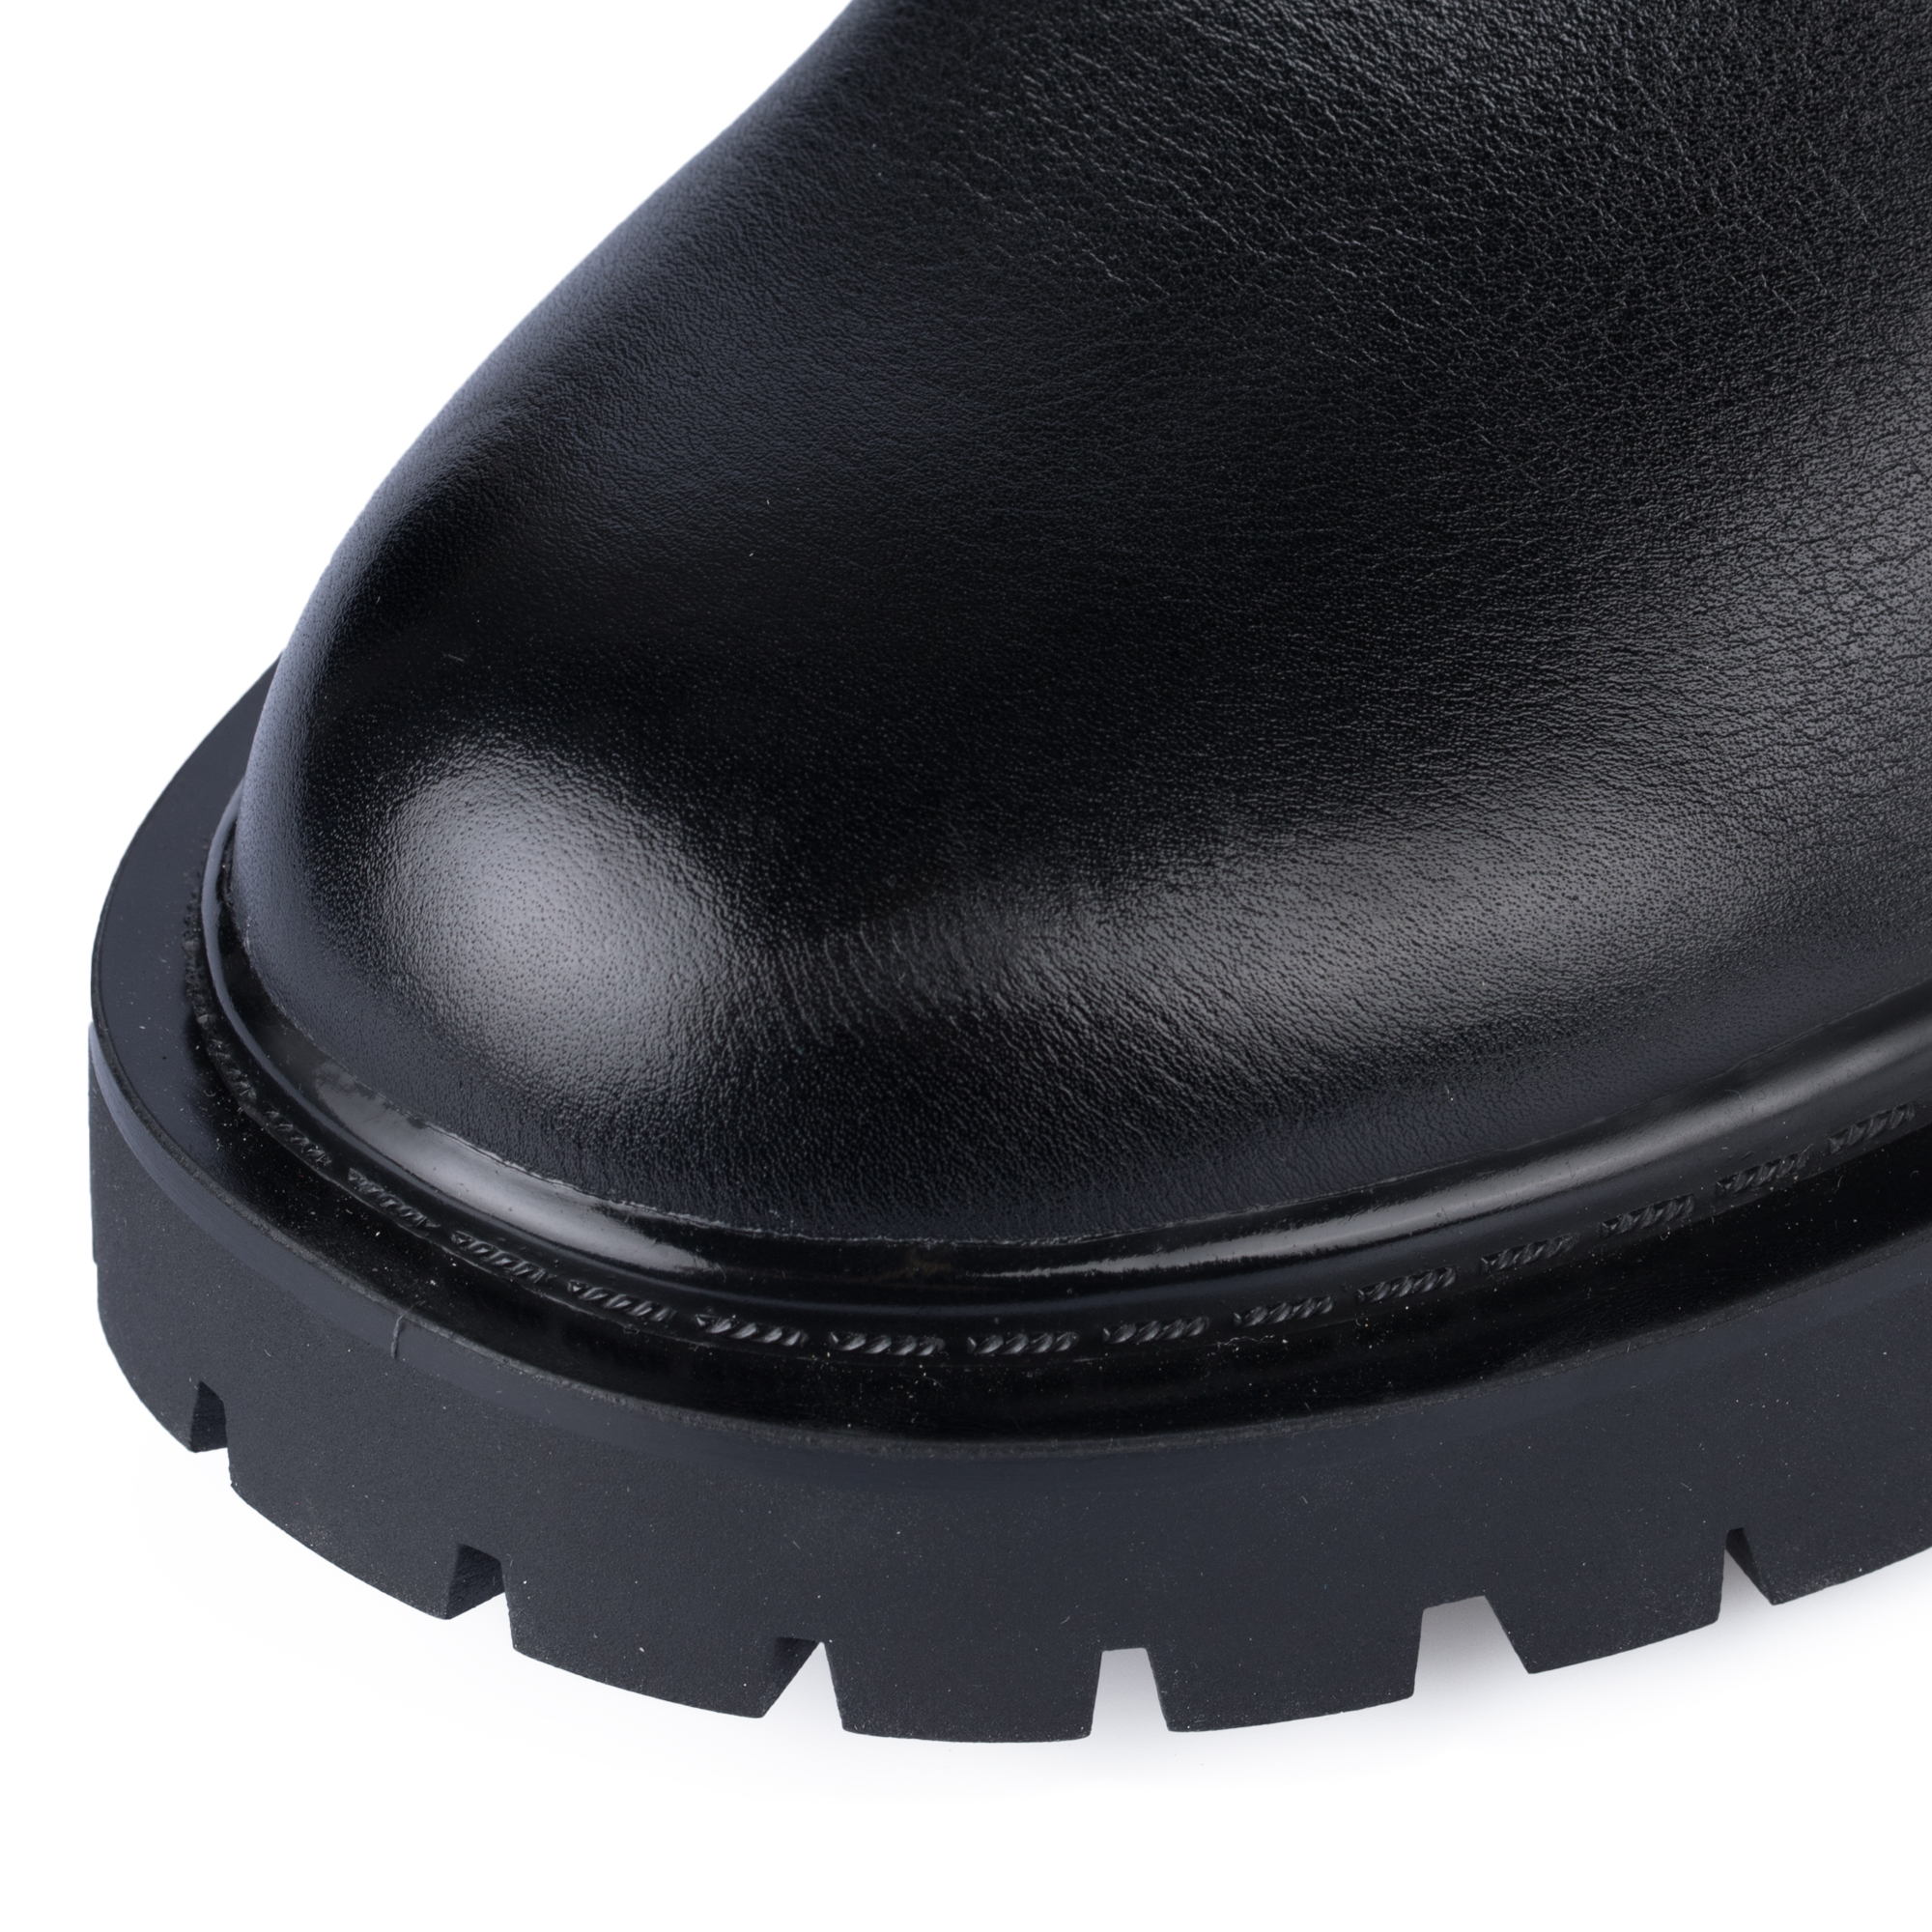 Ботинки Thomas Munz 058-980A-3102, цвет черный, размер 39 - фото 6